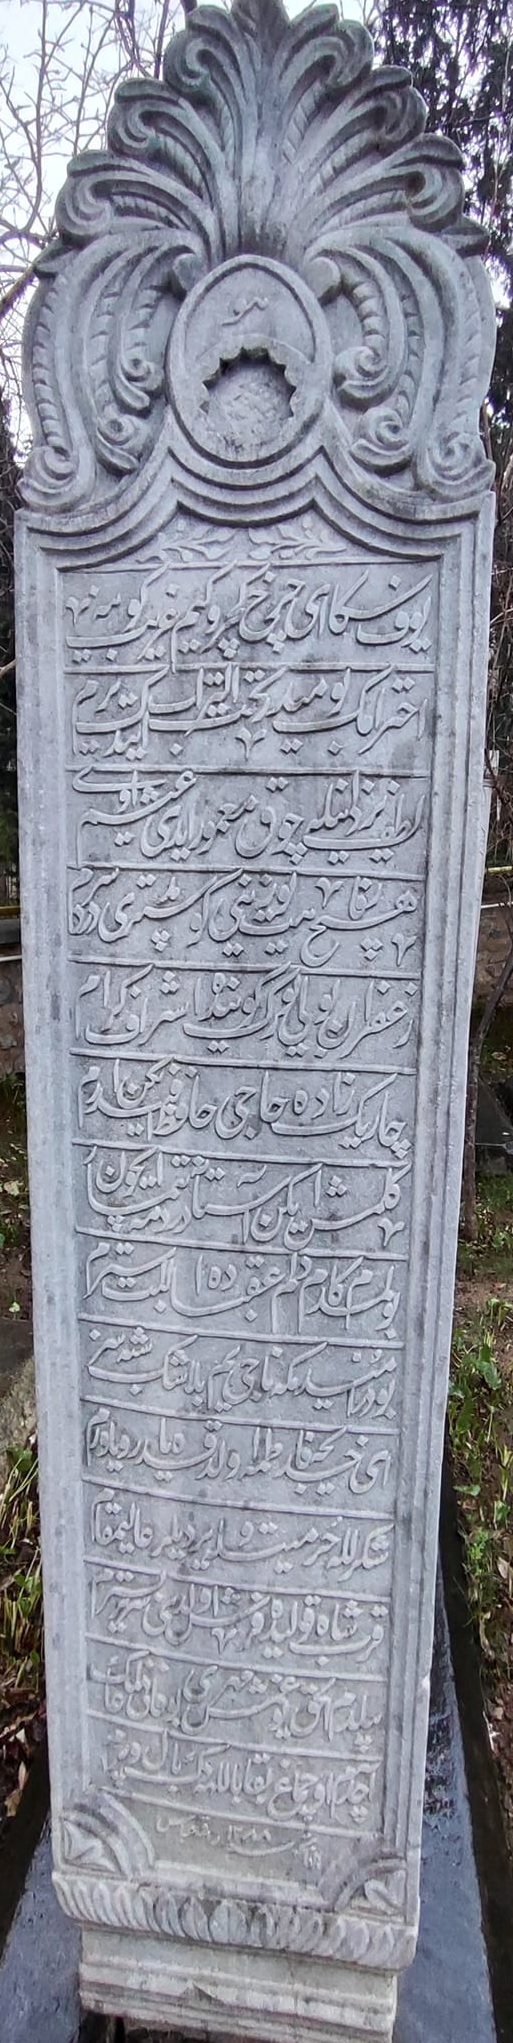 Hâcı Hâfız Efendi Osmanlıca mezar taşı